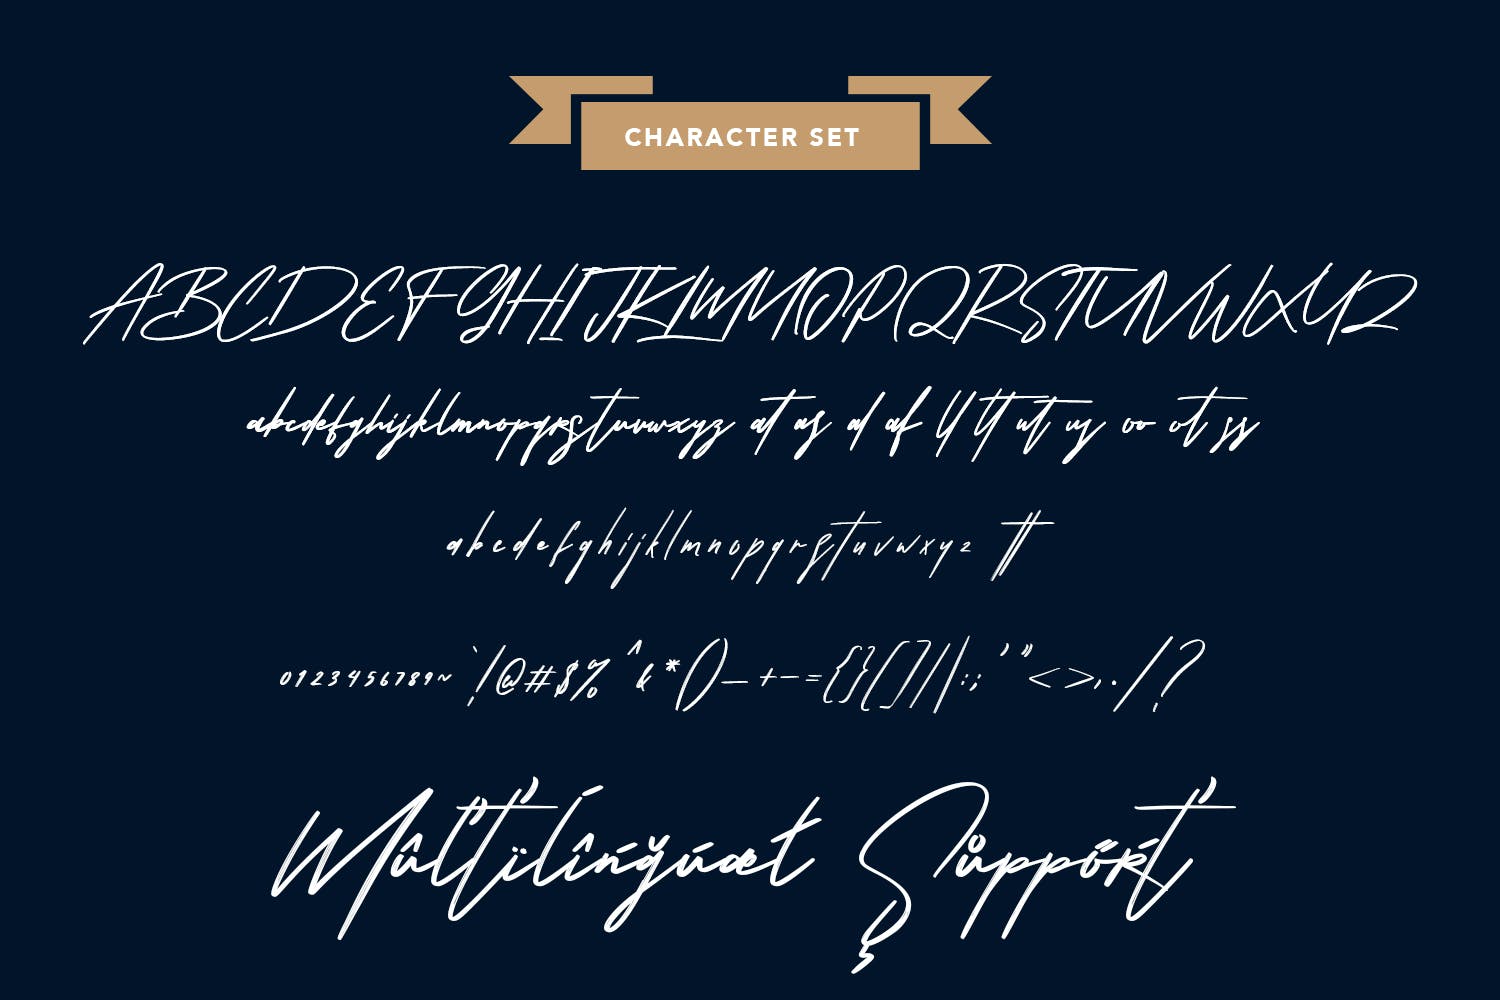 手写效果英文签名笔刷字体 Shoterns Signature Brush Font 设计素材 第8张